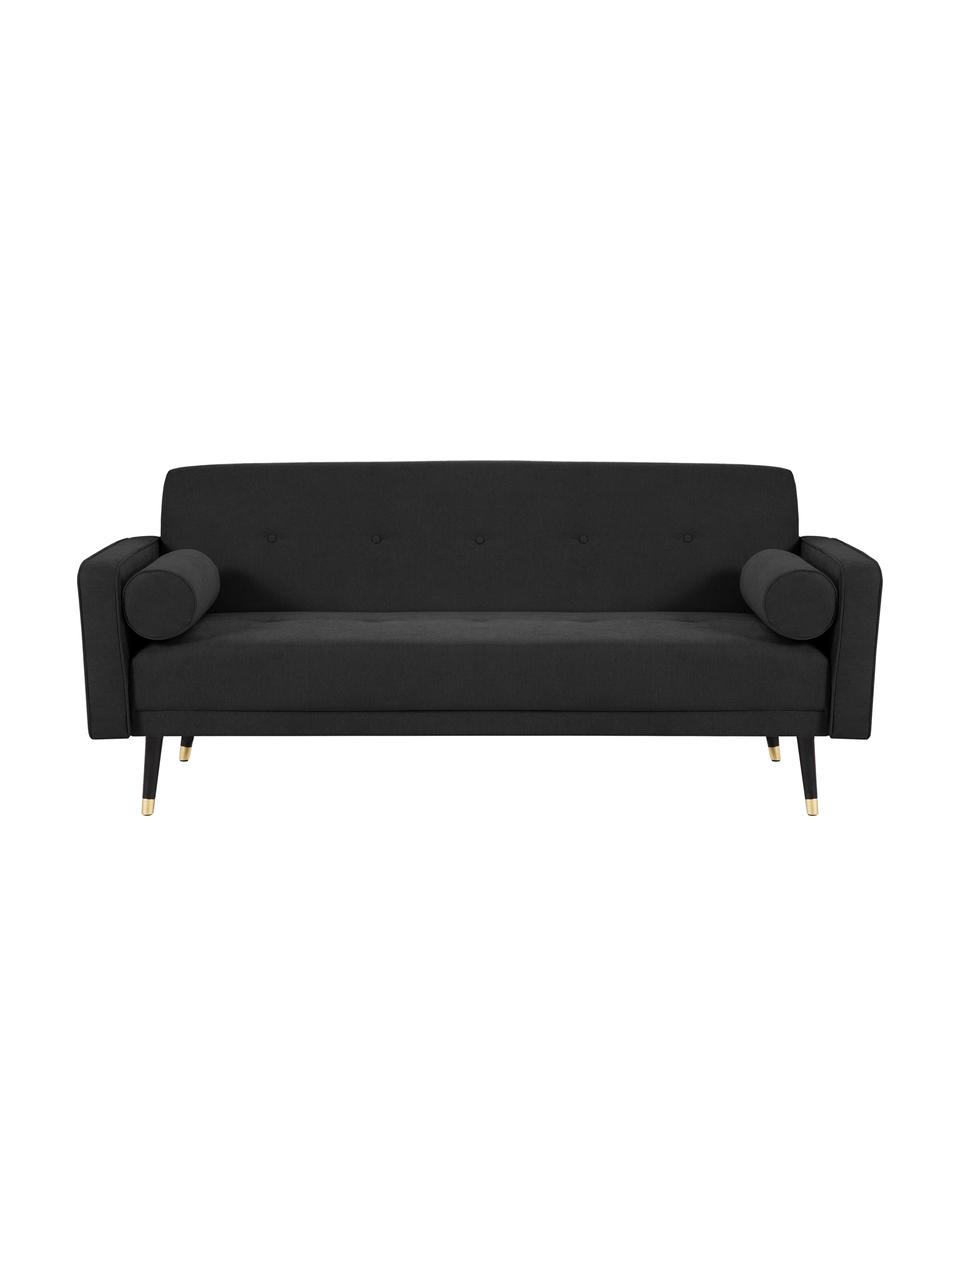 Sofa rozkładana z aksamitu Alessia (3-osobowa), Tapicerka: poliester, Nogi: drewno bukowe, lakierowan, Czarny, S 212 x G 93 cm